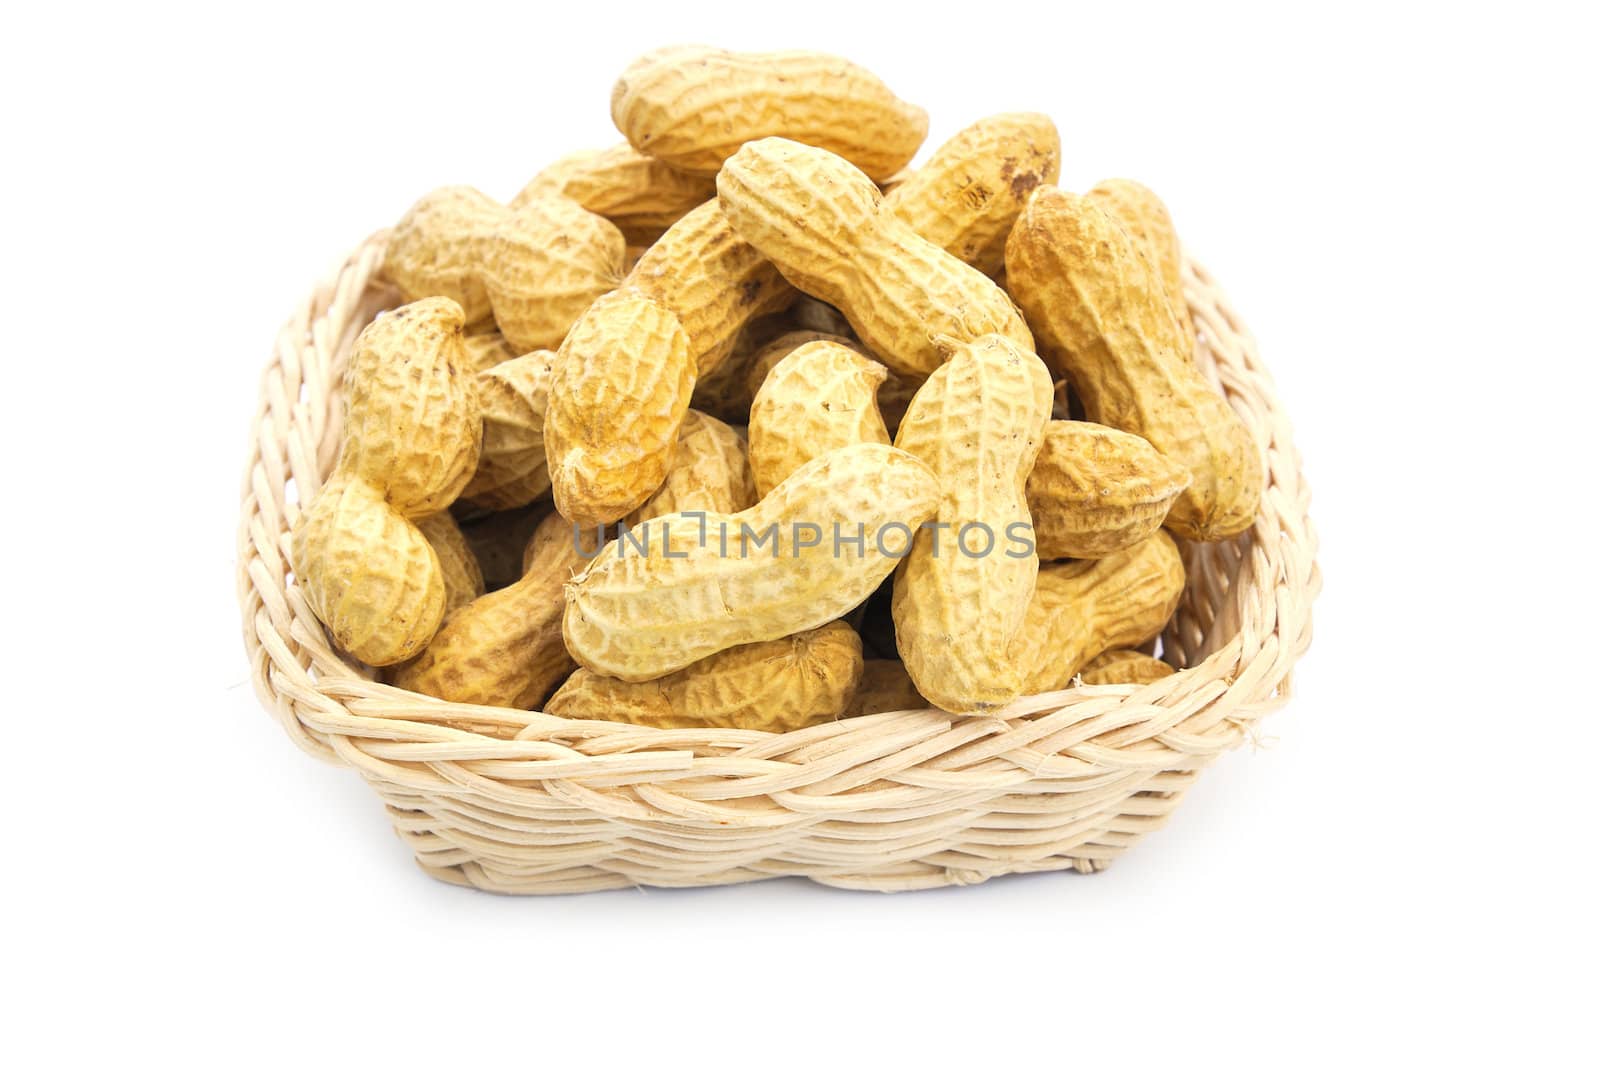 Dried peanuts